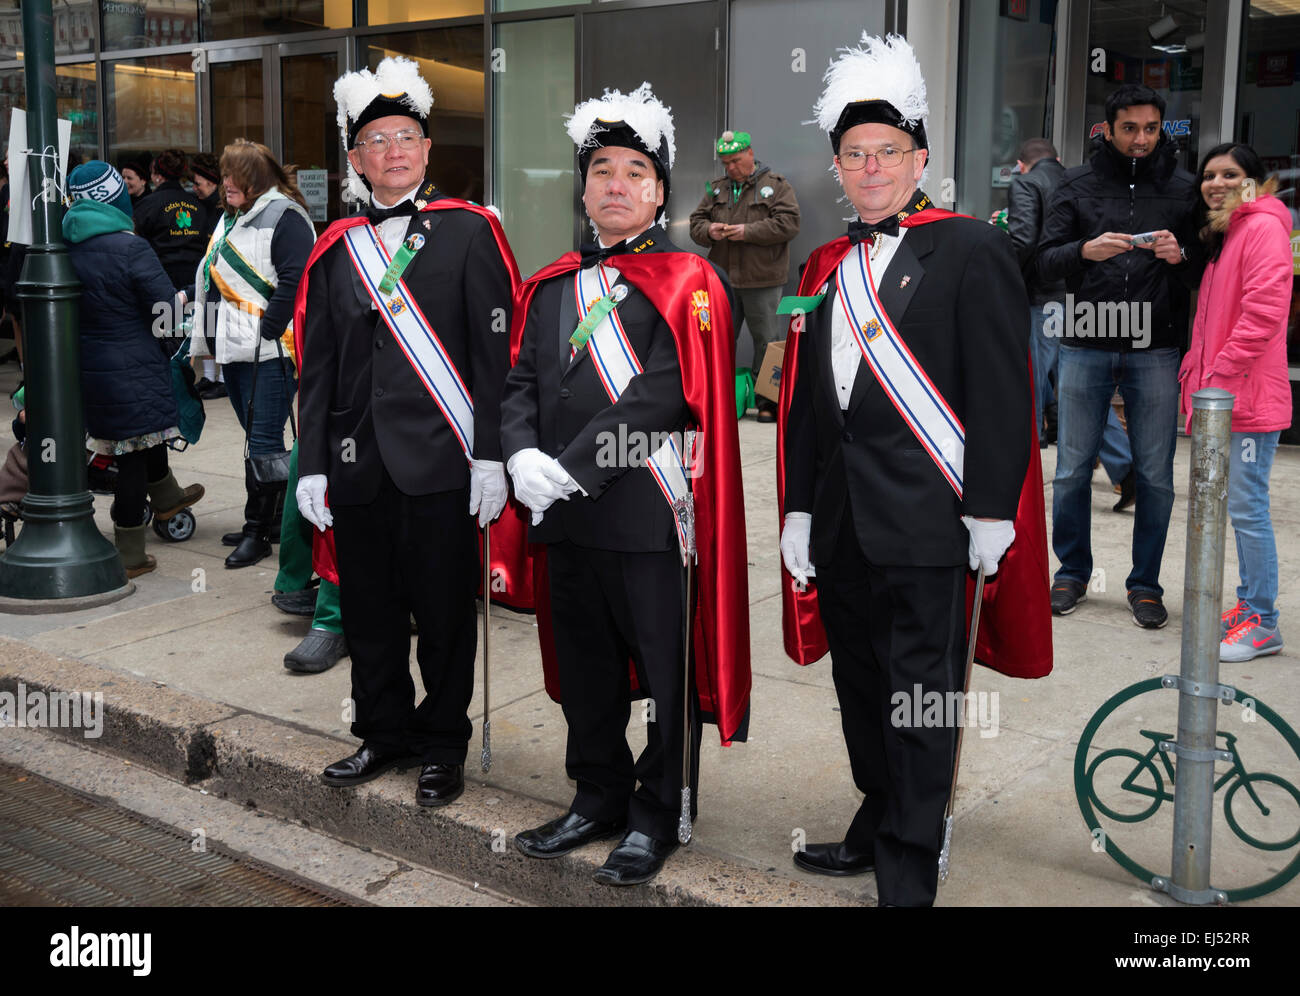 Les invités honorés en tenue officielle accueillent les participants à la parade, St. Patrick's Day Parade, Philadelphie, USA Banque D'Images